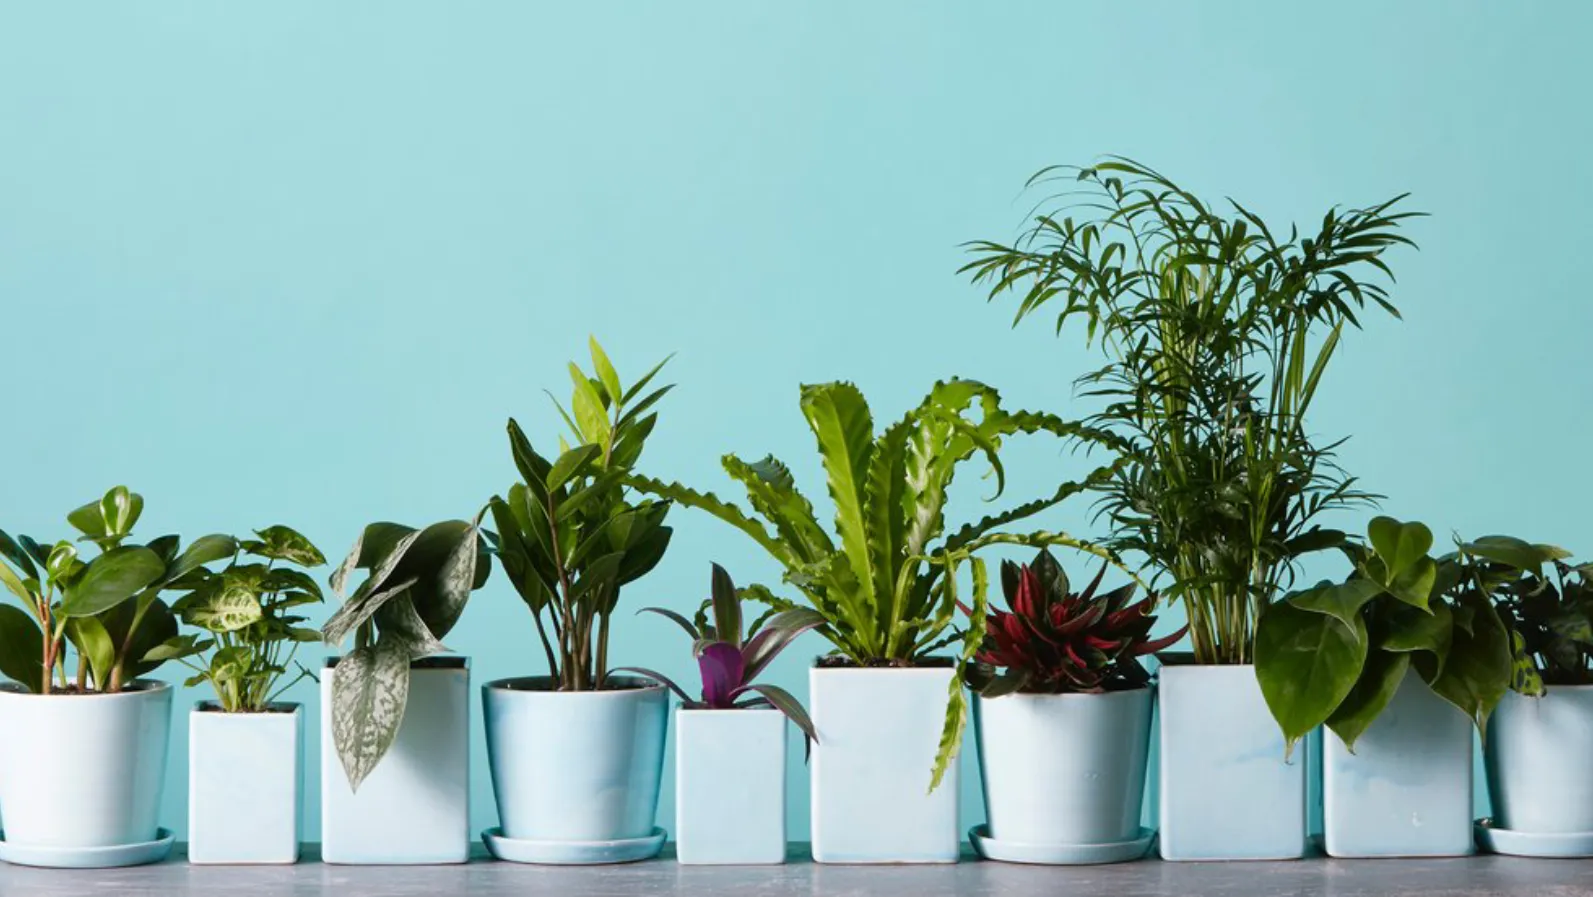 5 комнатных растений с осенним настроением